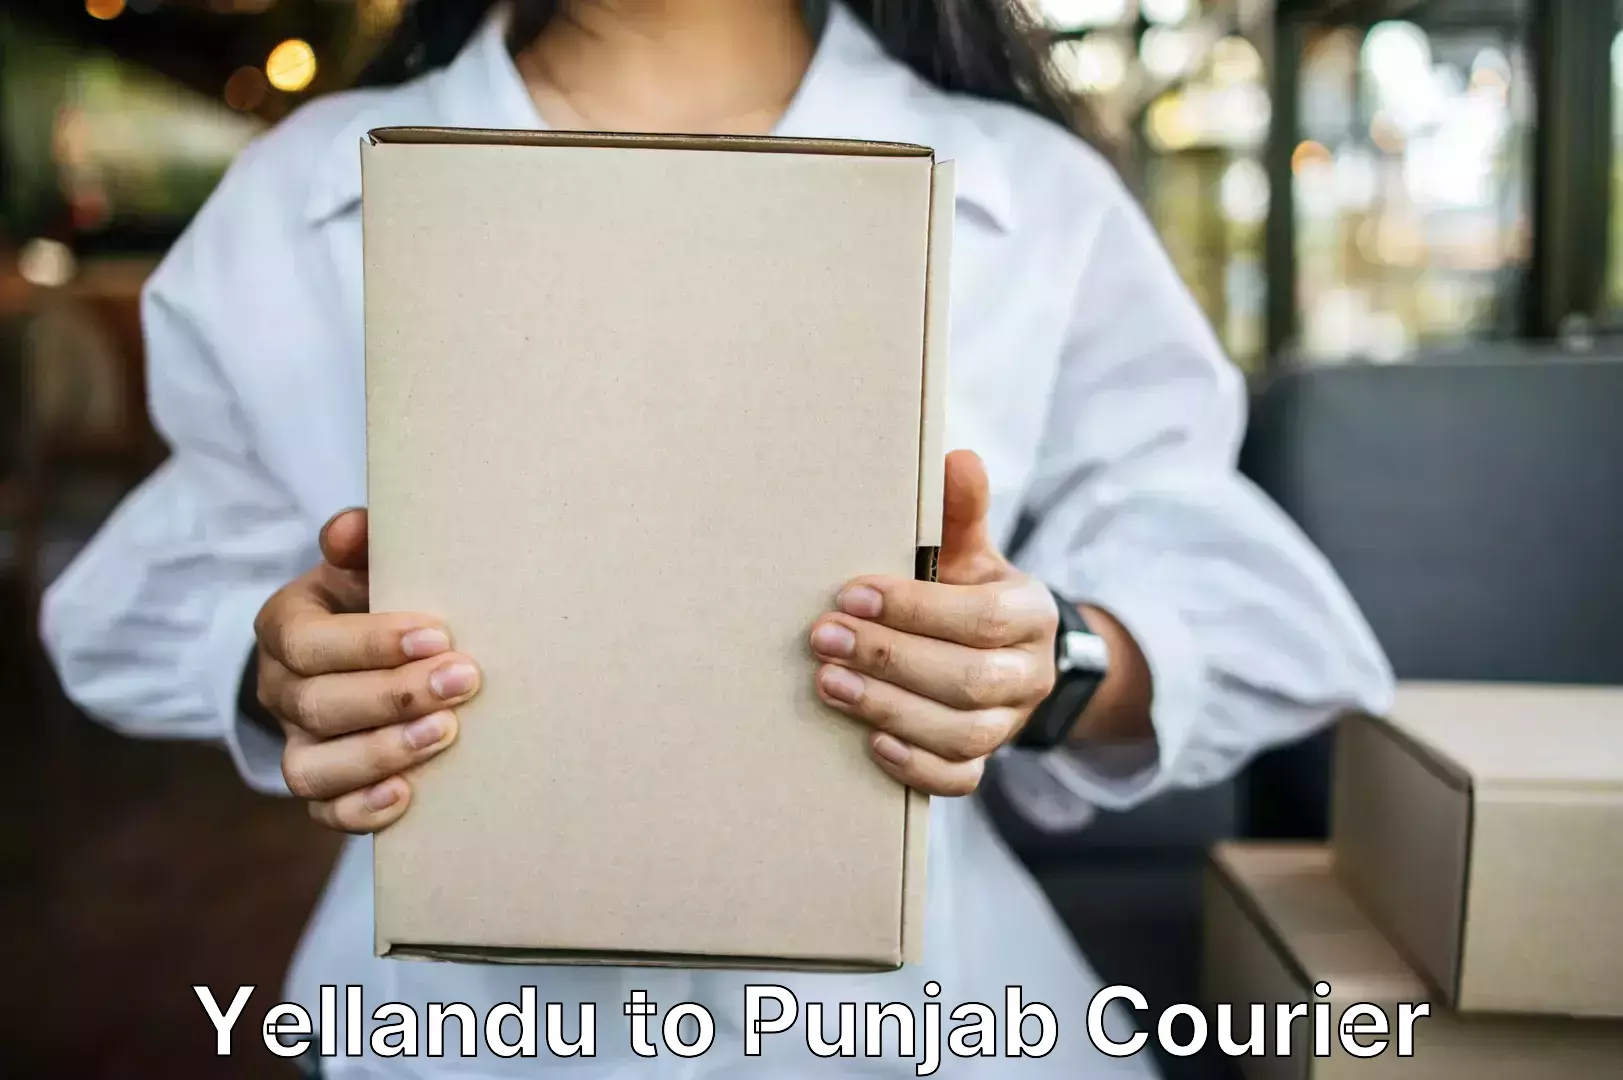 Reliable luggage courier Yellandu to Central University of Punjab Bathinda